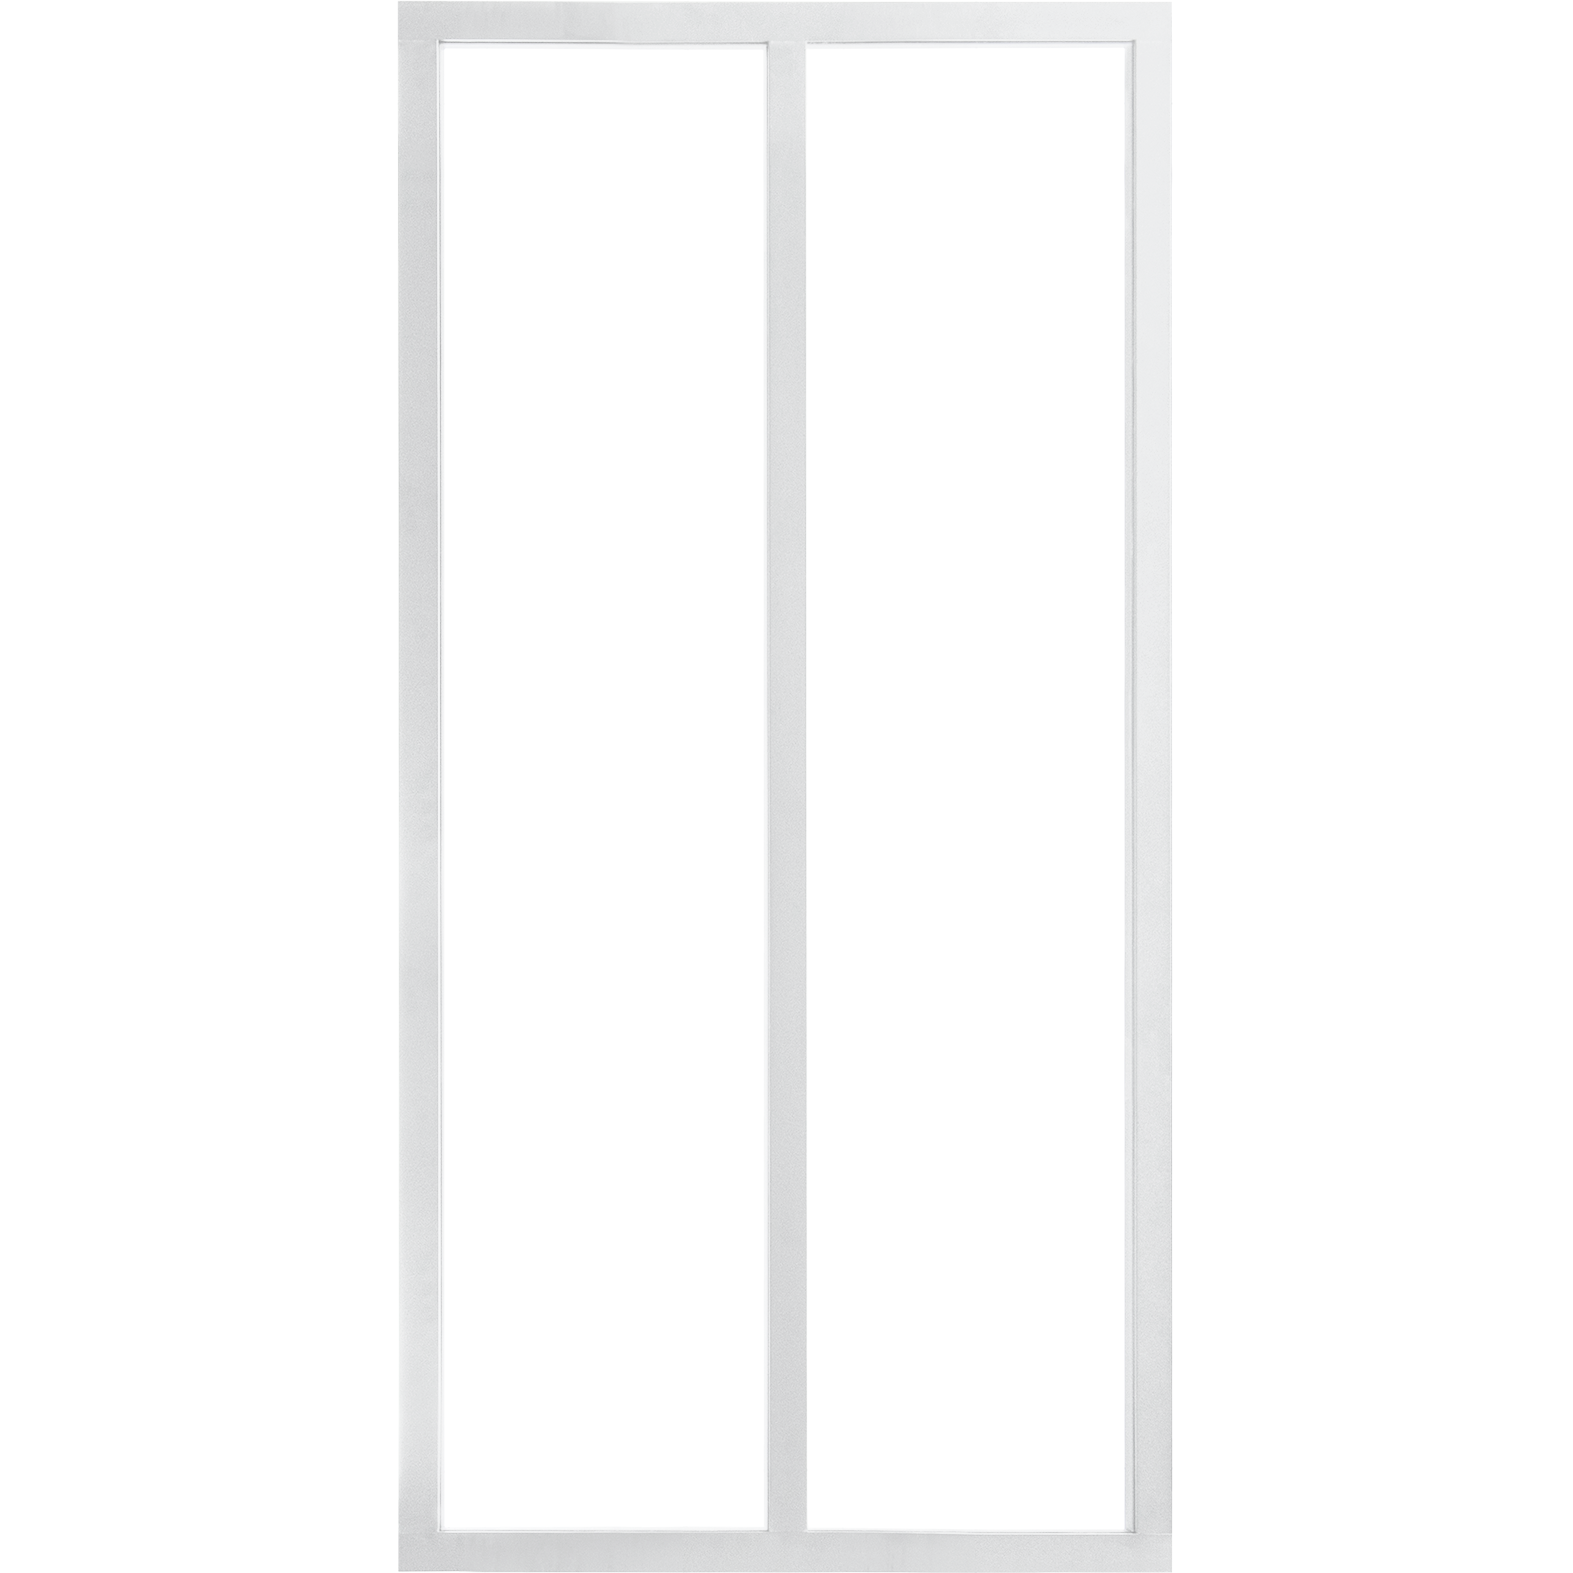 Verrière intérieure KIT ATELIER Blanc H 130cm 2 vitrages clair inclus 1